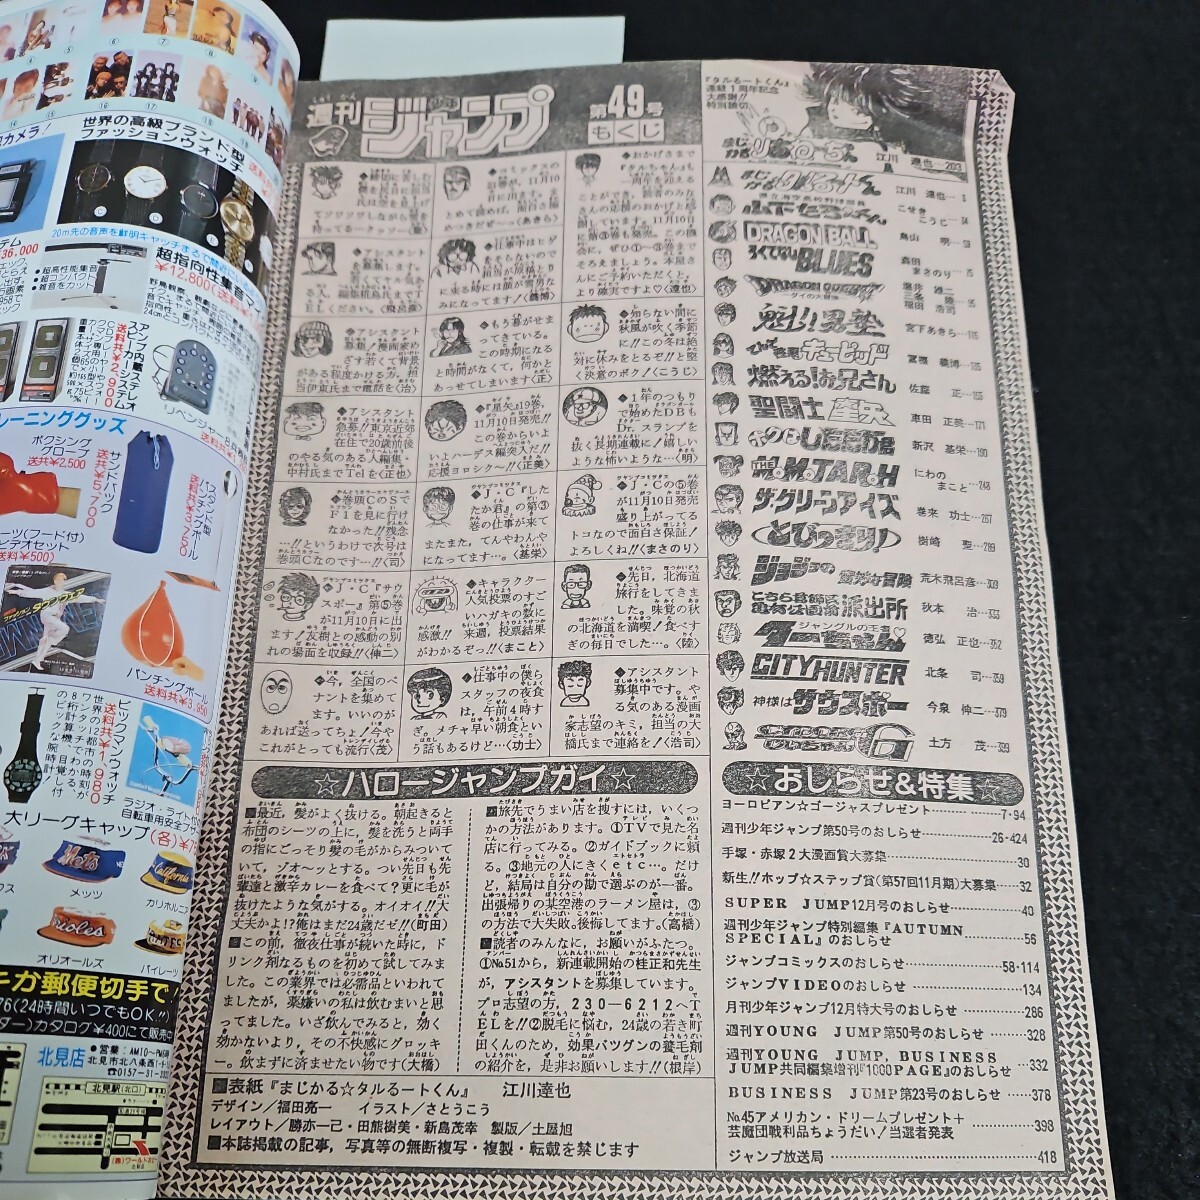 い50-072 週刊少年ジャンプ 平成元年 11月 22日発行 反りあり